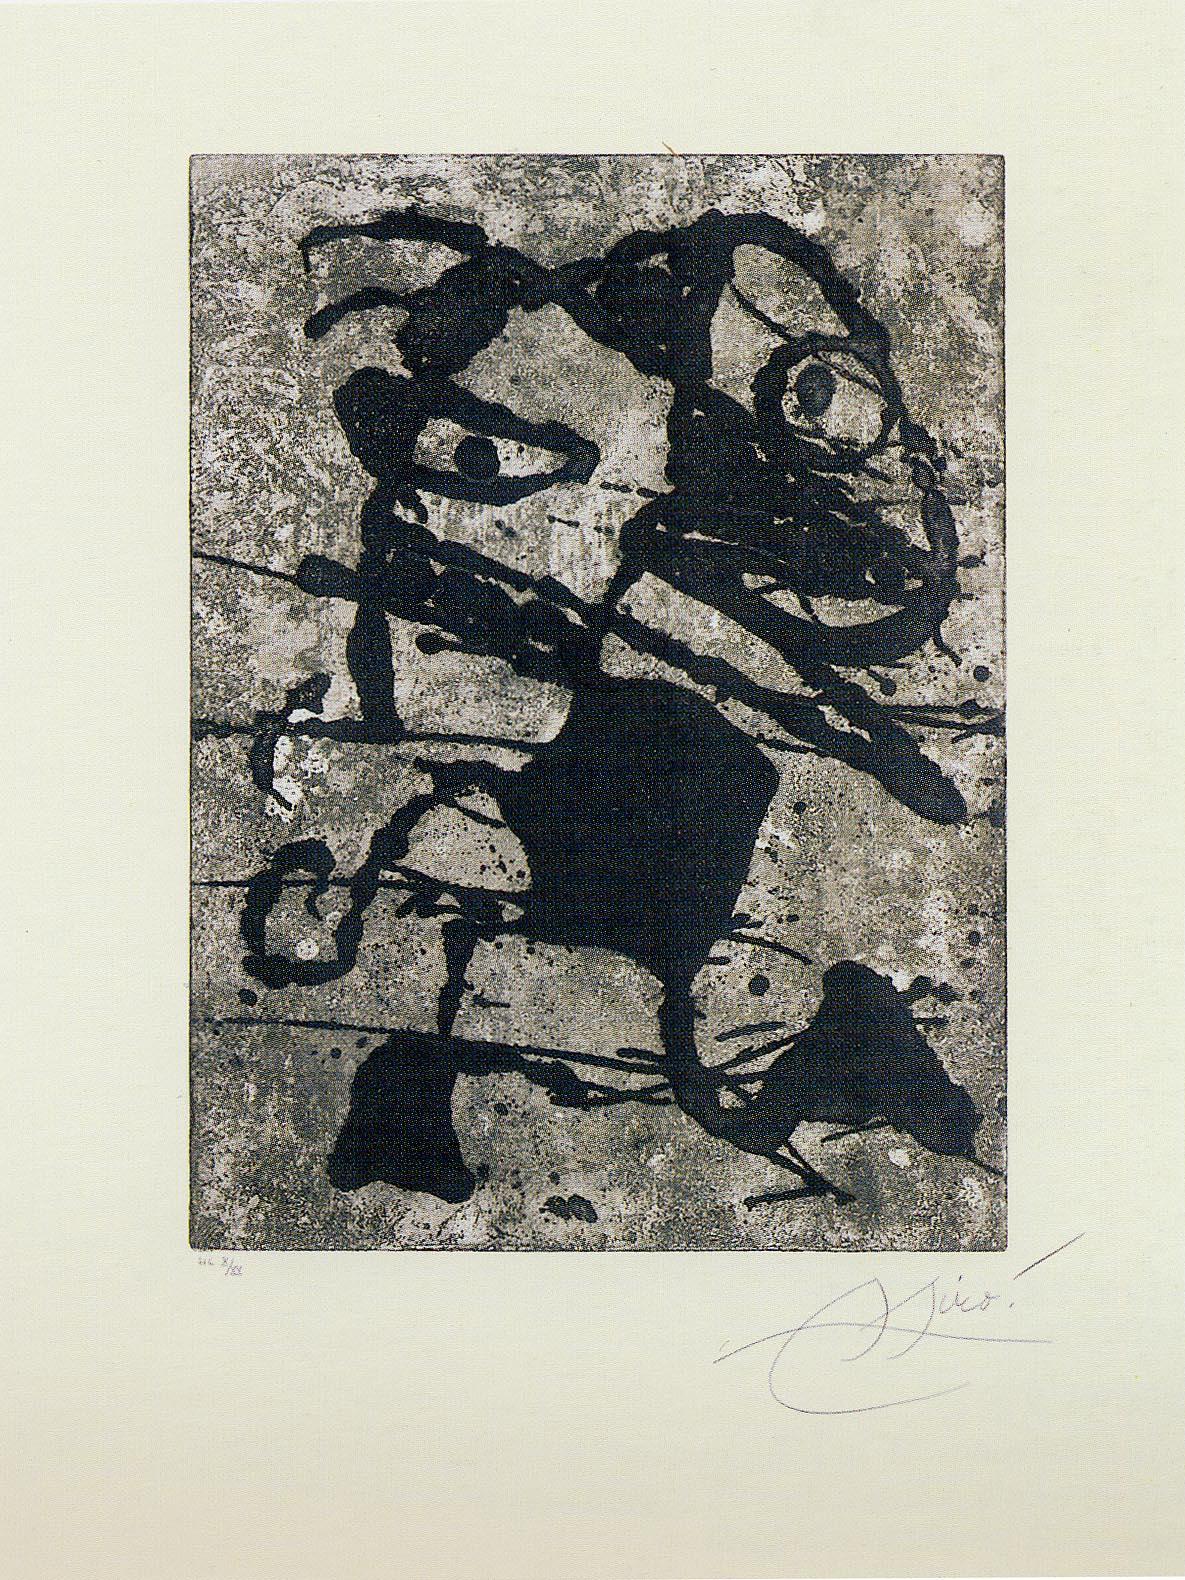 Joan Miró Abstract Print - Rupestres 15